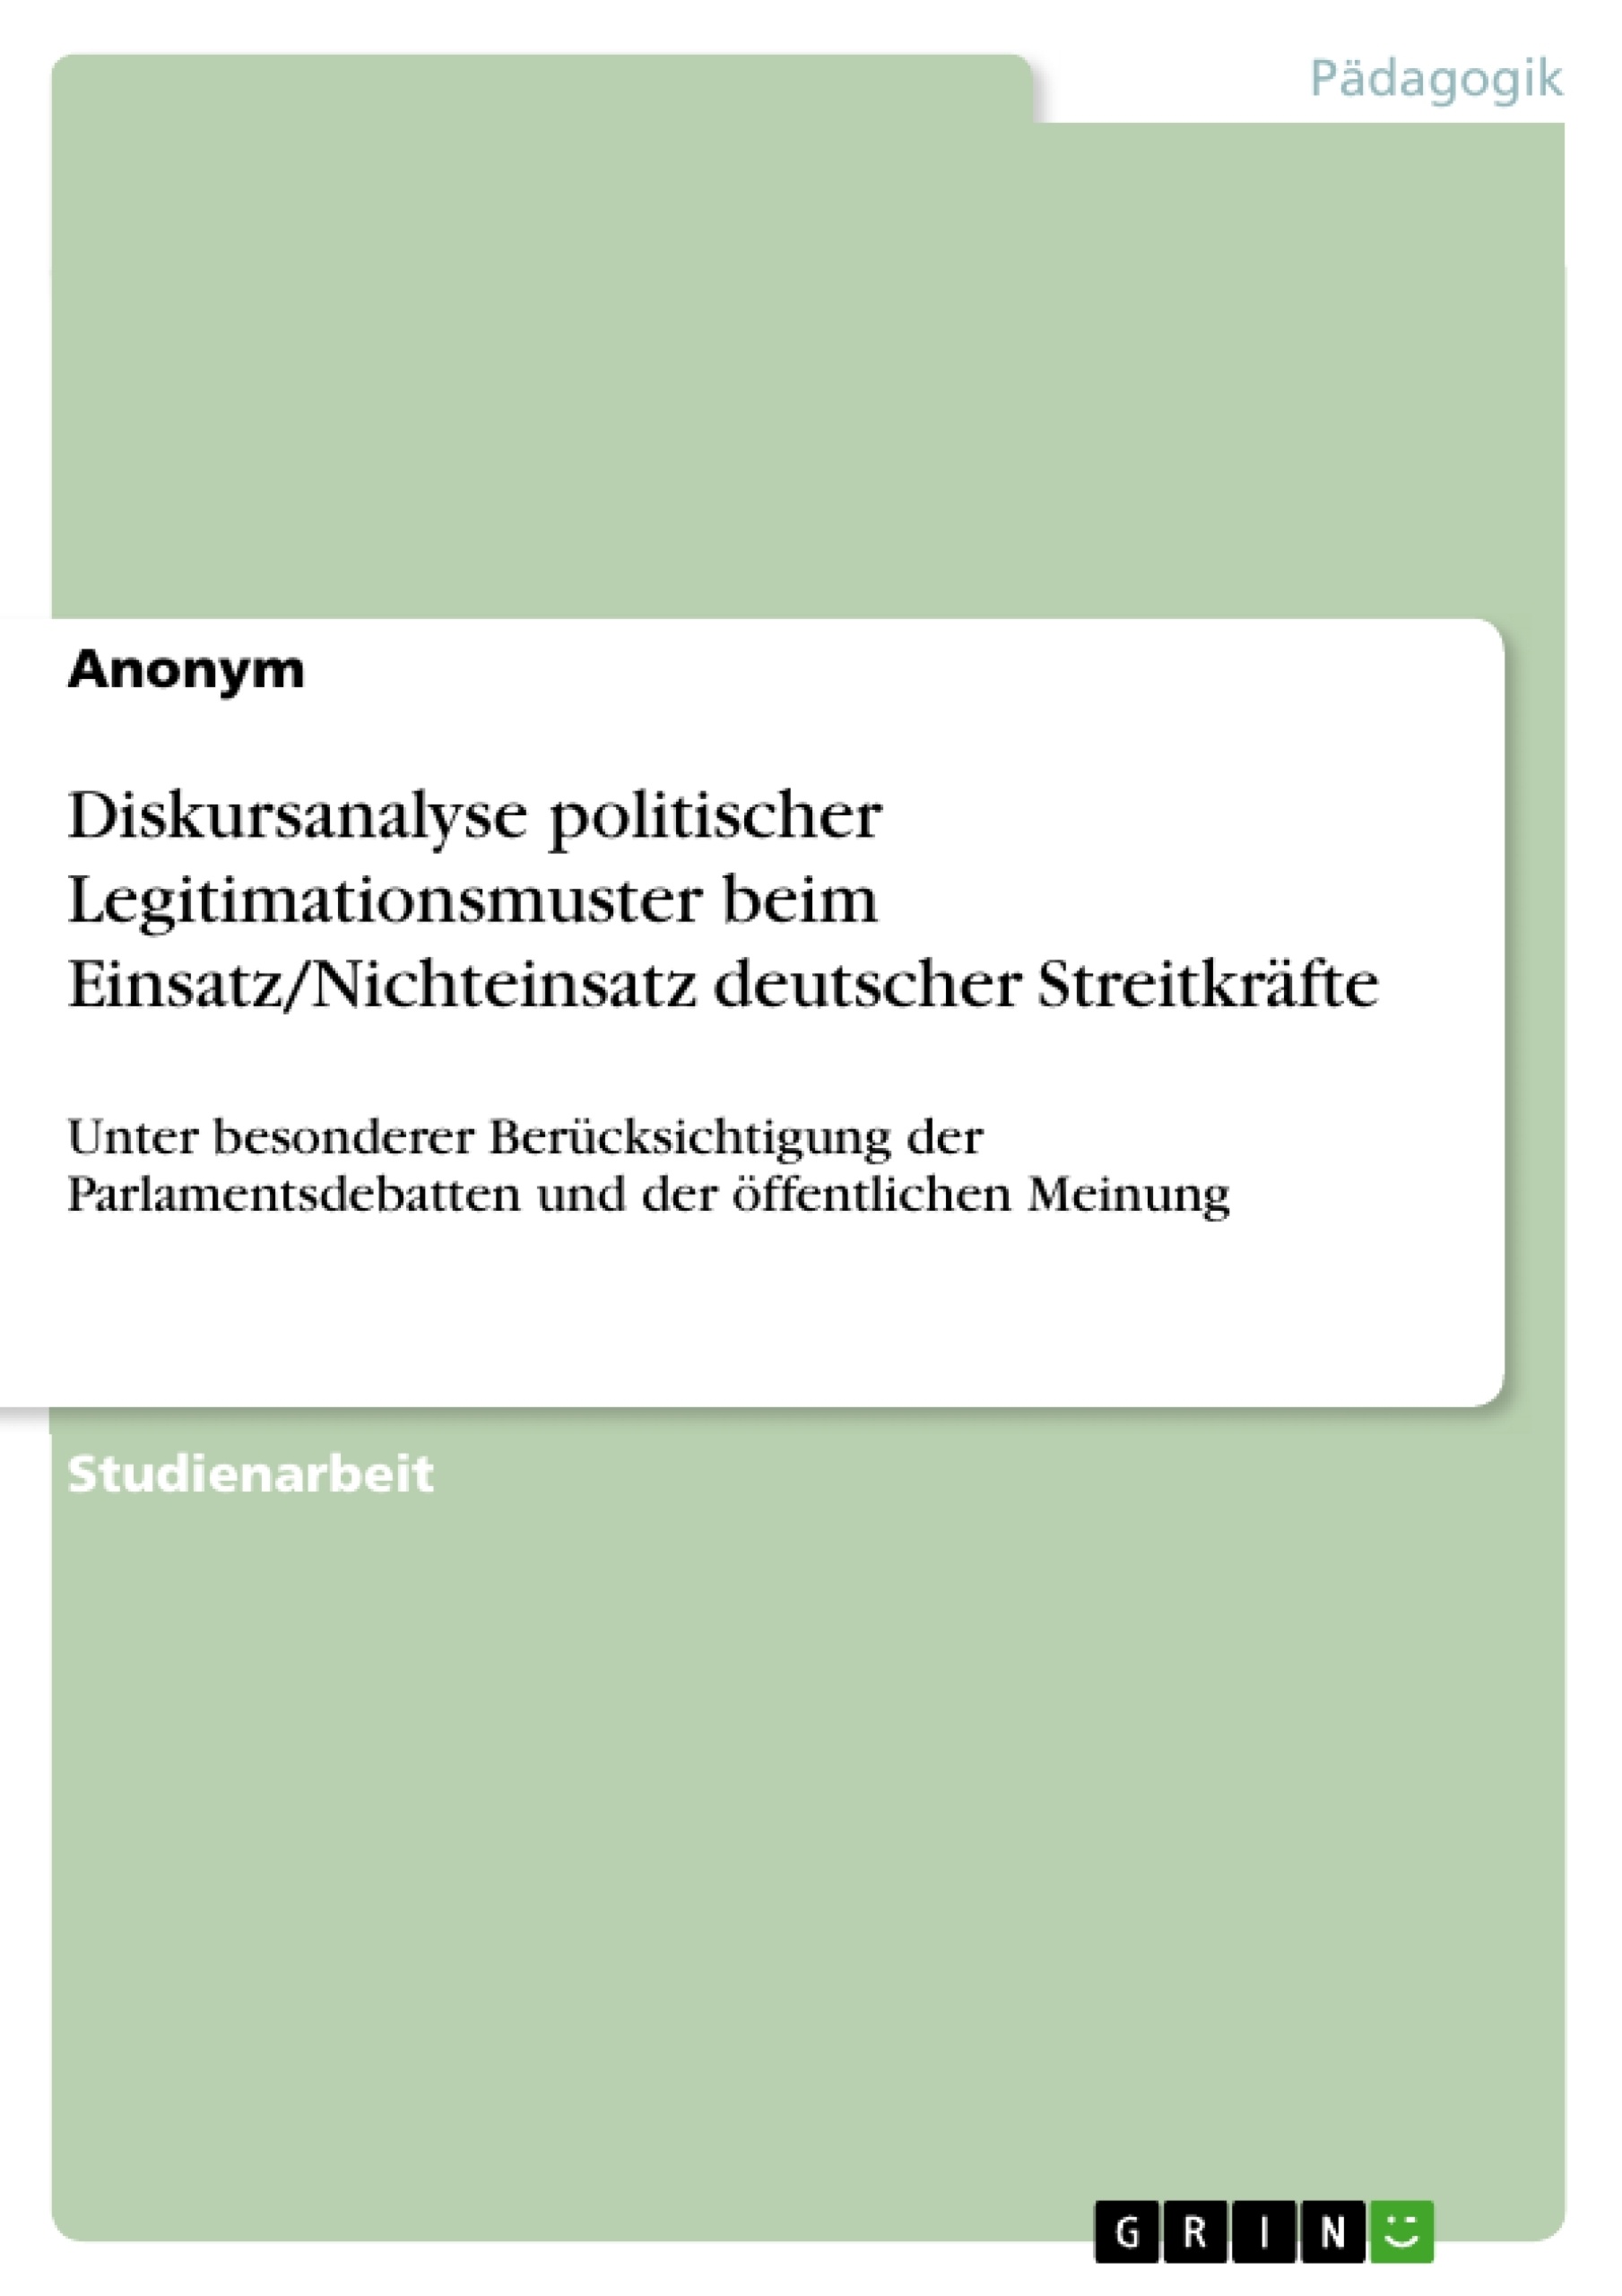 Title: Diskursanalyse politischer Legitimationsmuster beim Einsatz/Nichteinsatz deutscher Streitkräfte